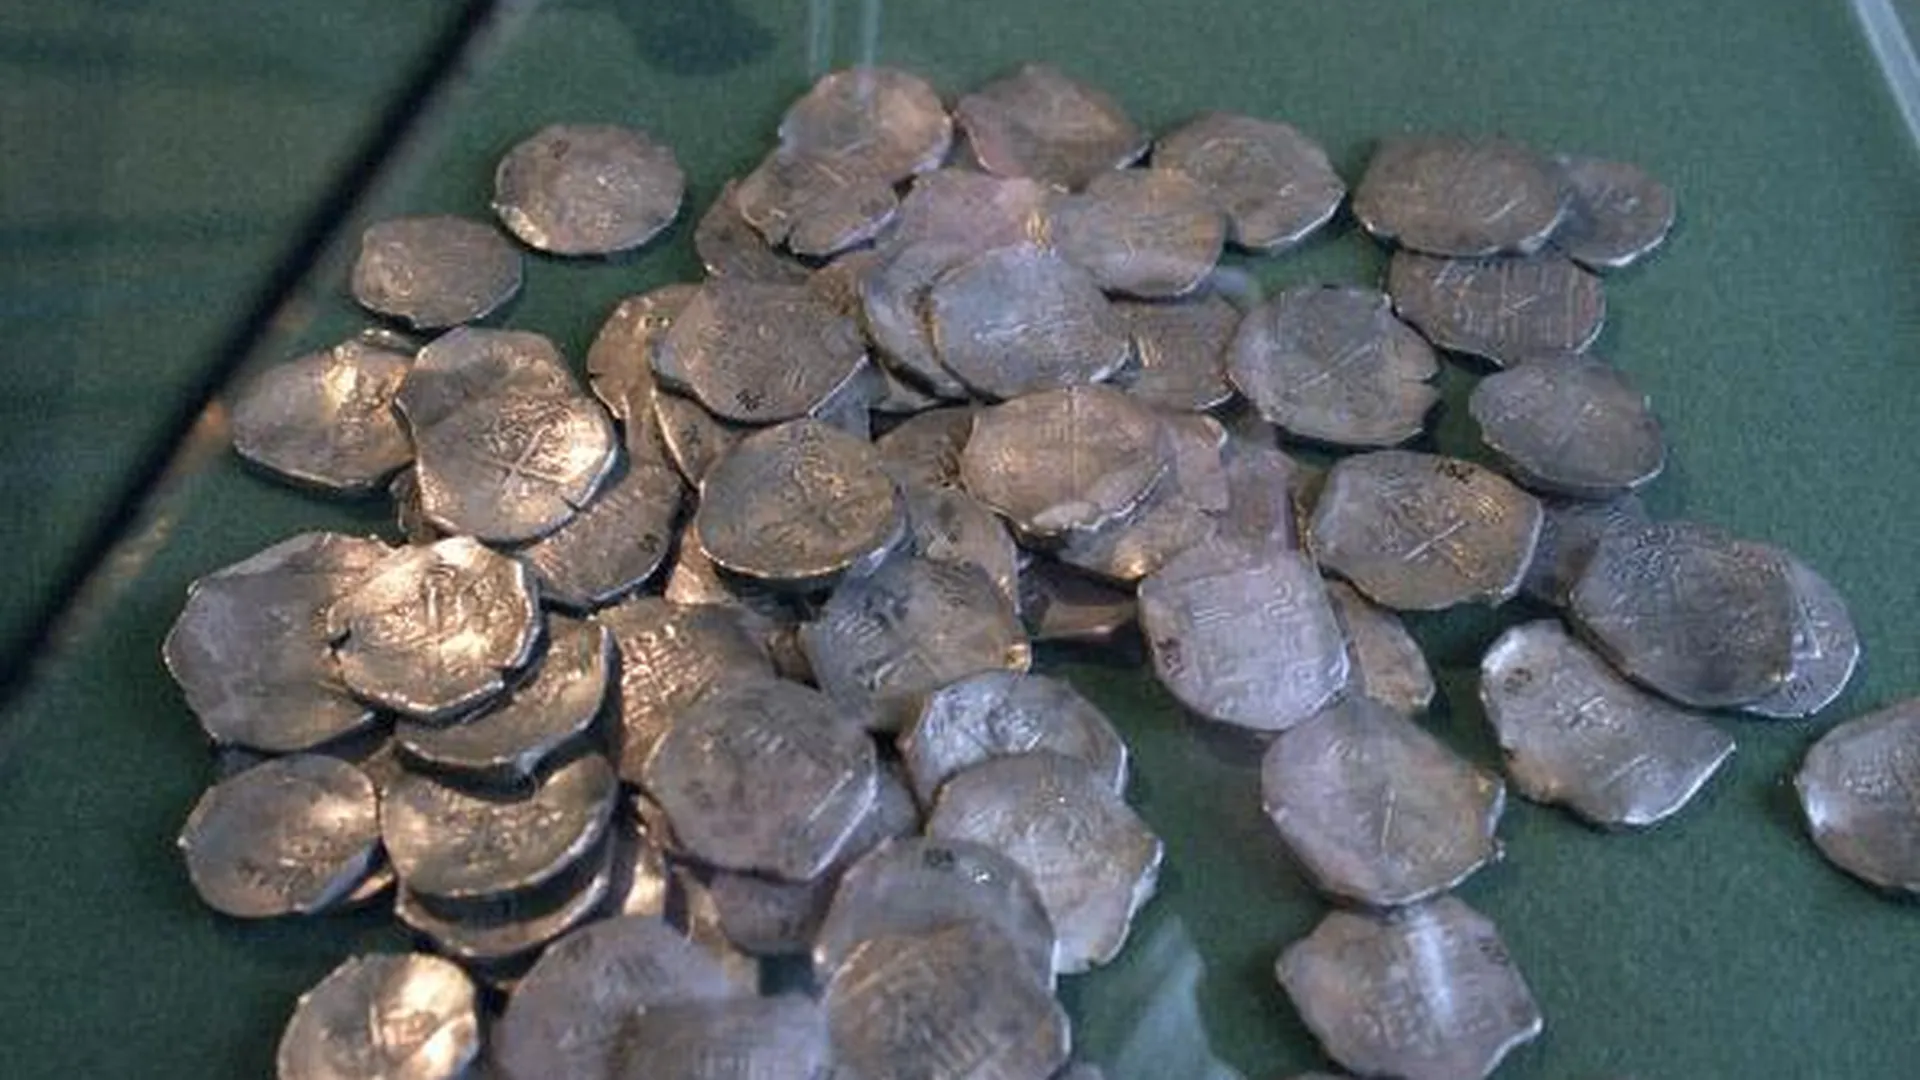 При реставрации усадьбы в области нашли 380 монет 19 века